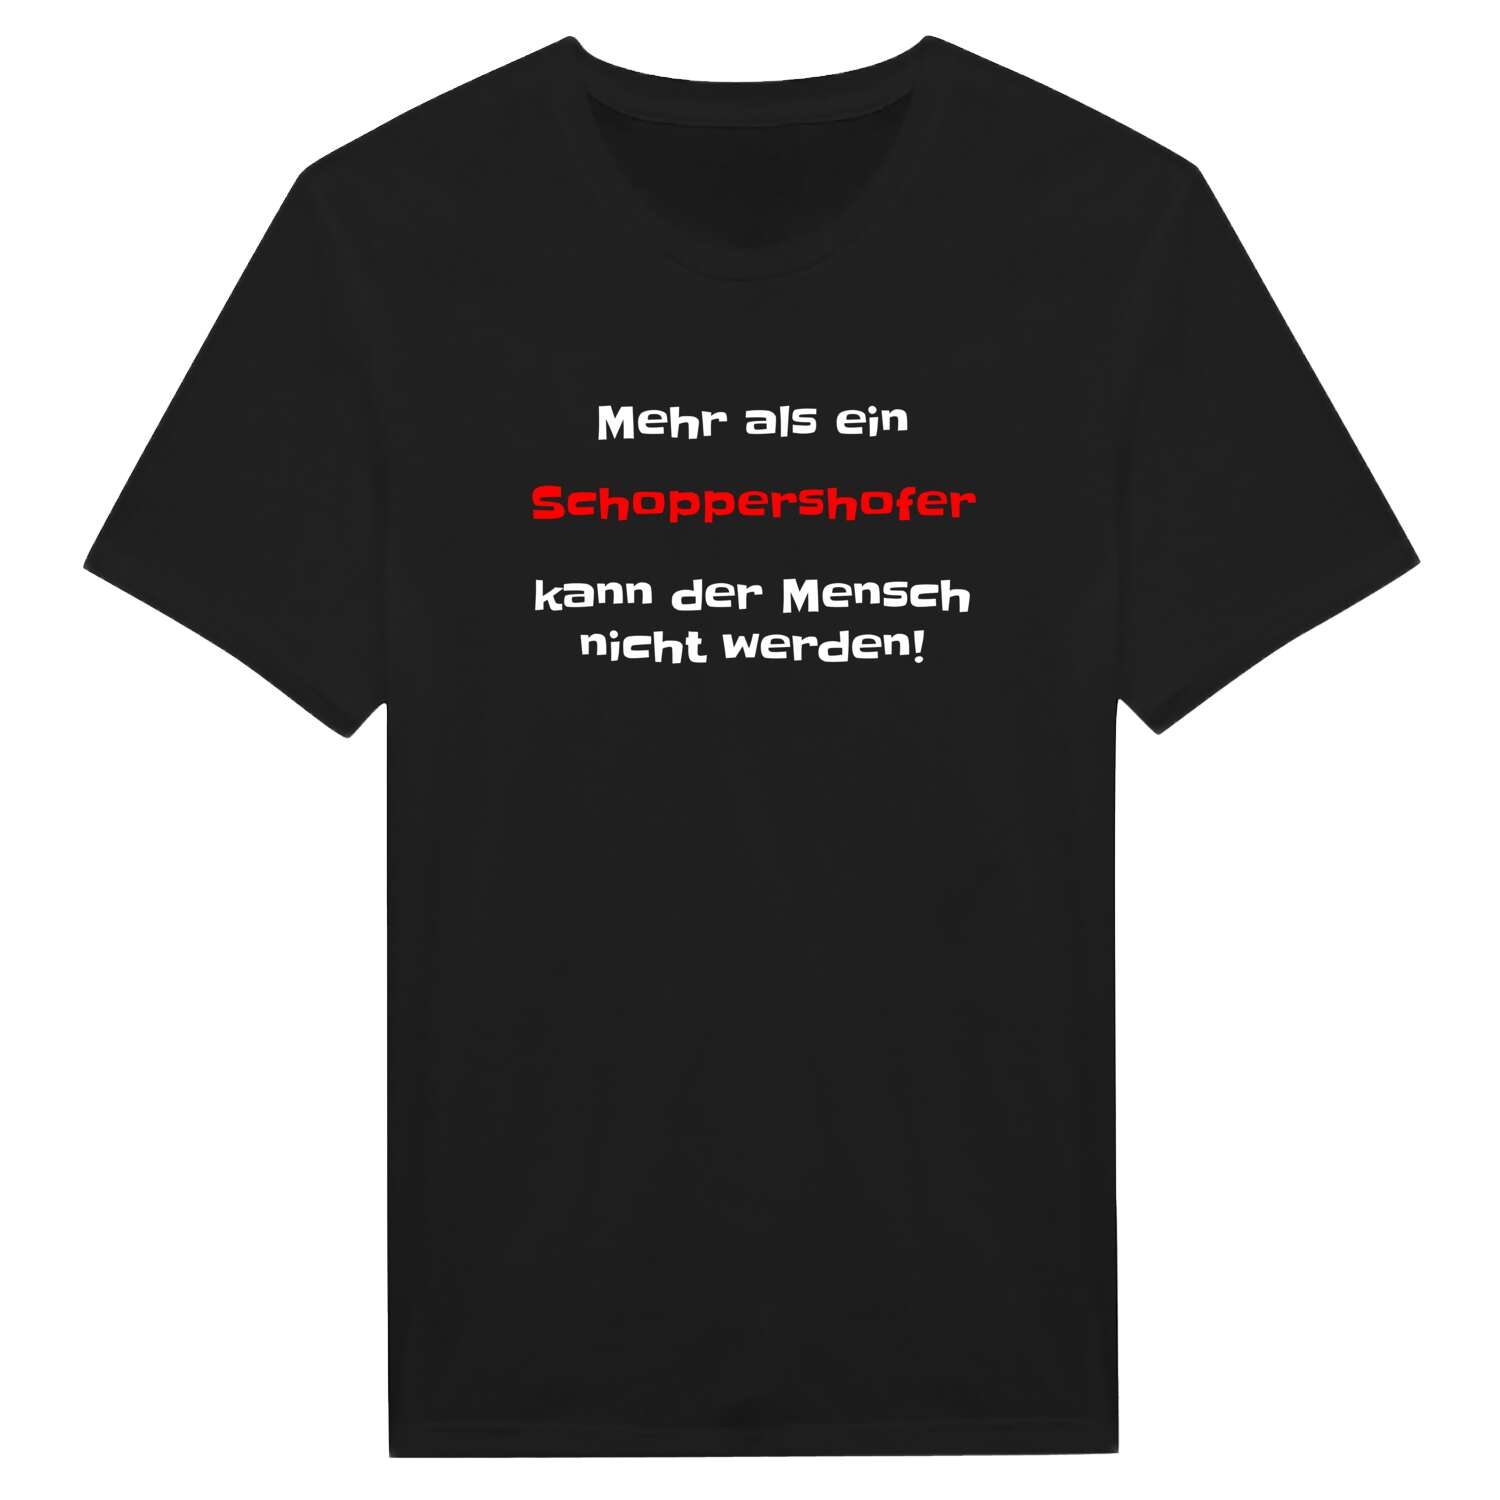 Schoppershof T-Shirt »Mehr als ein«